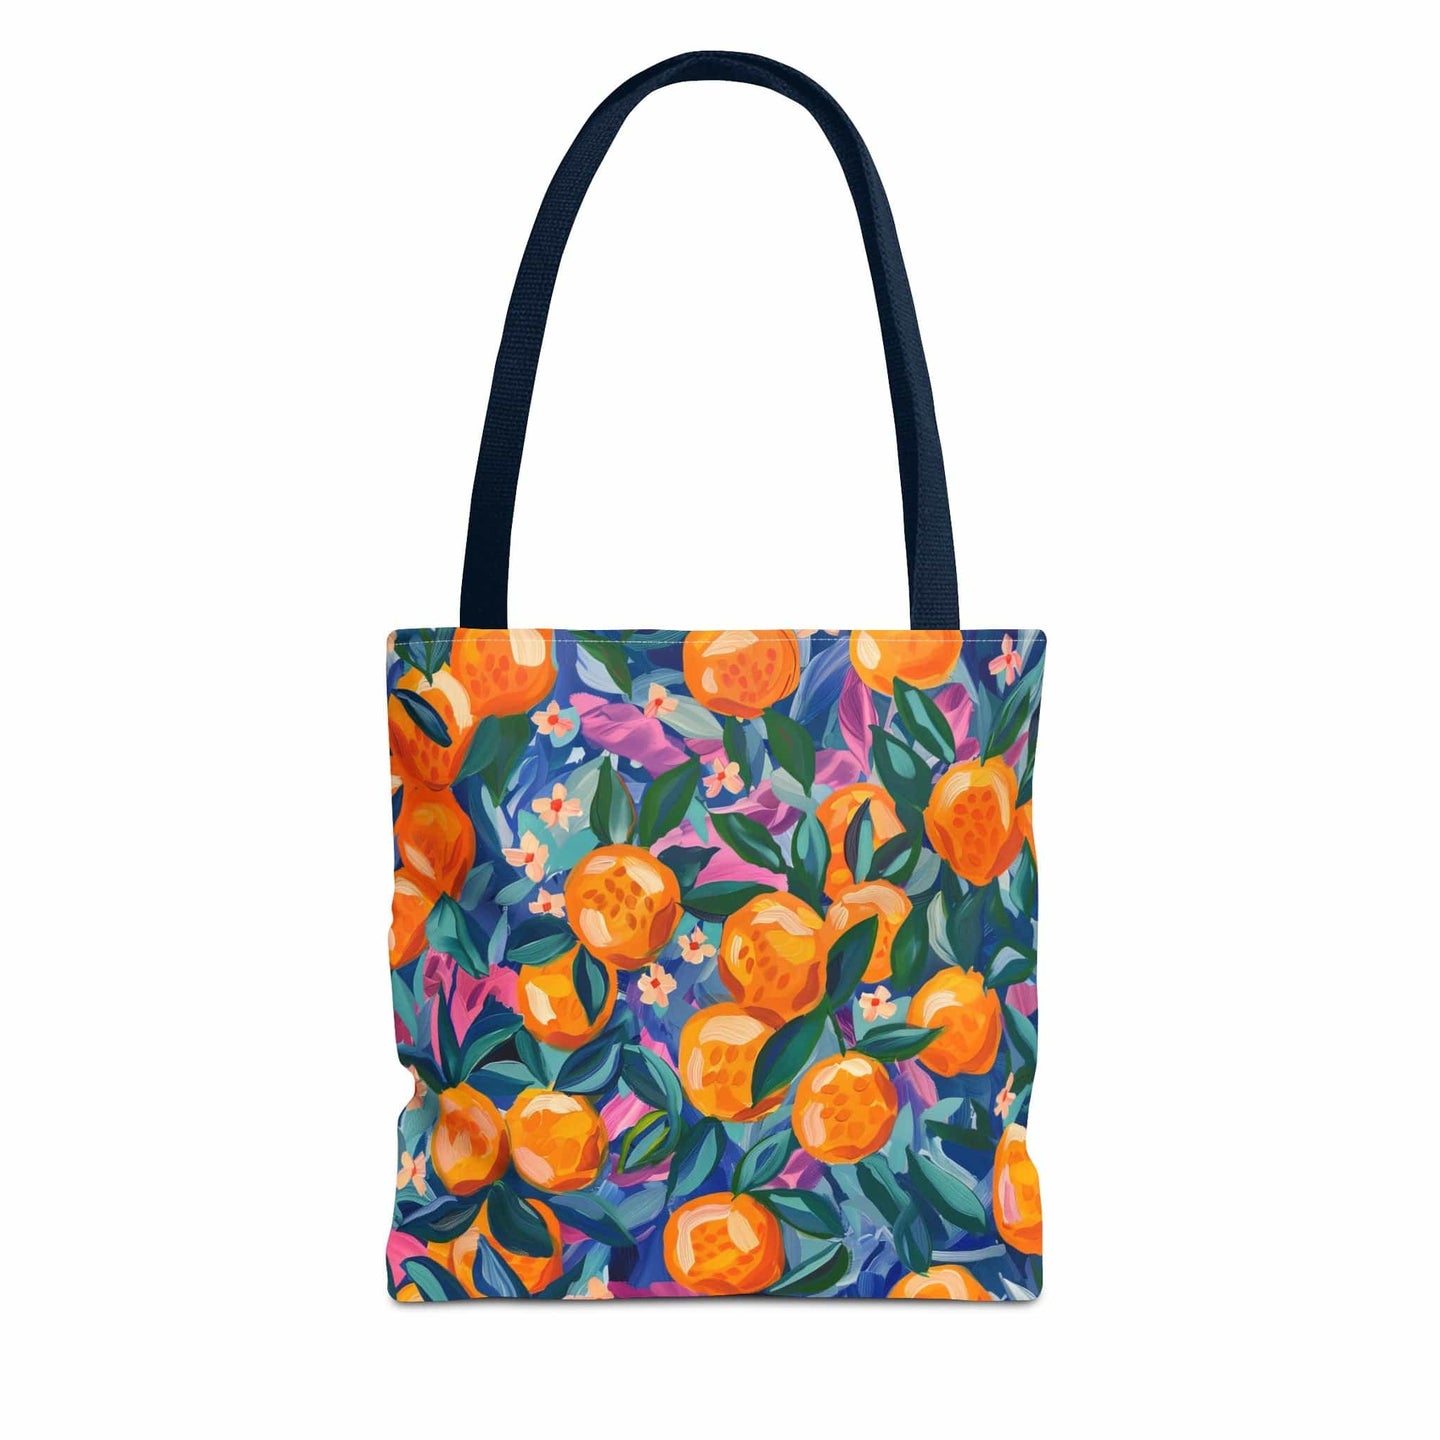 Free Gift - Fruit Tote Bag